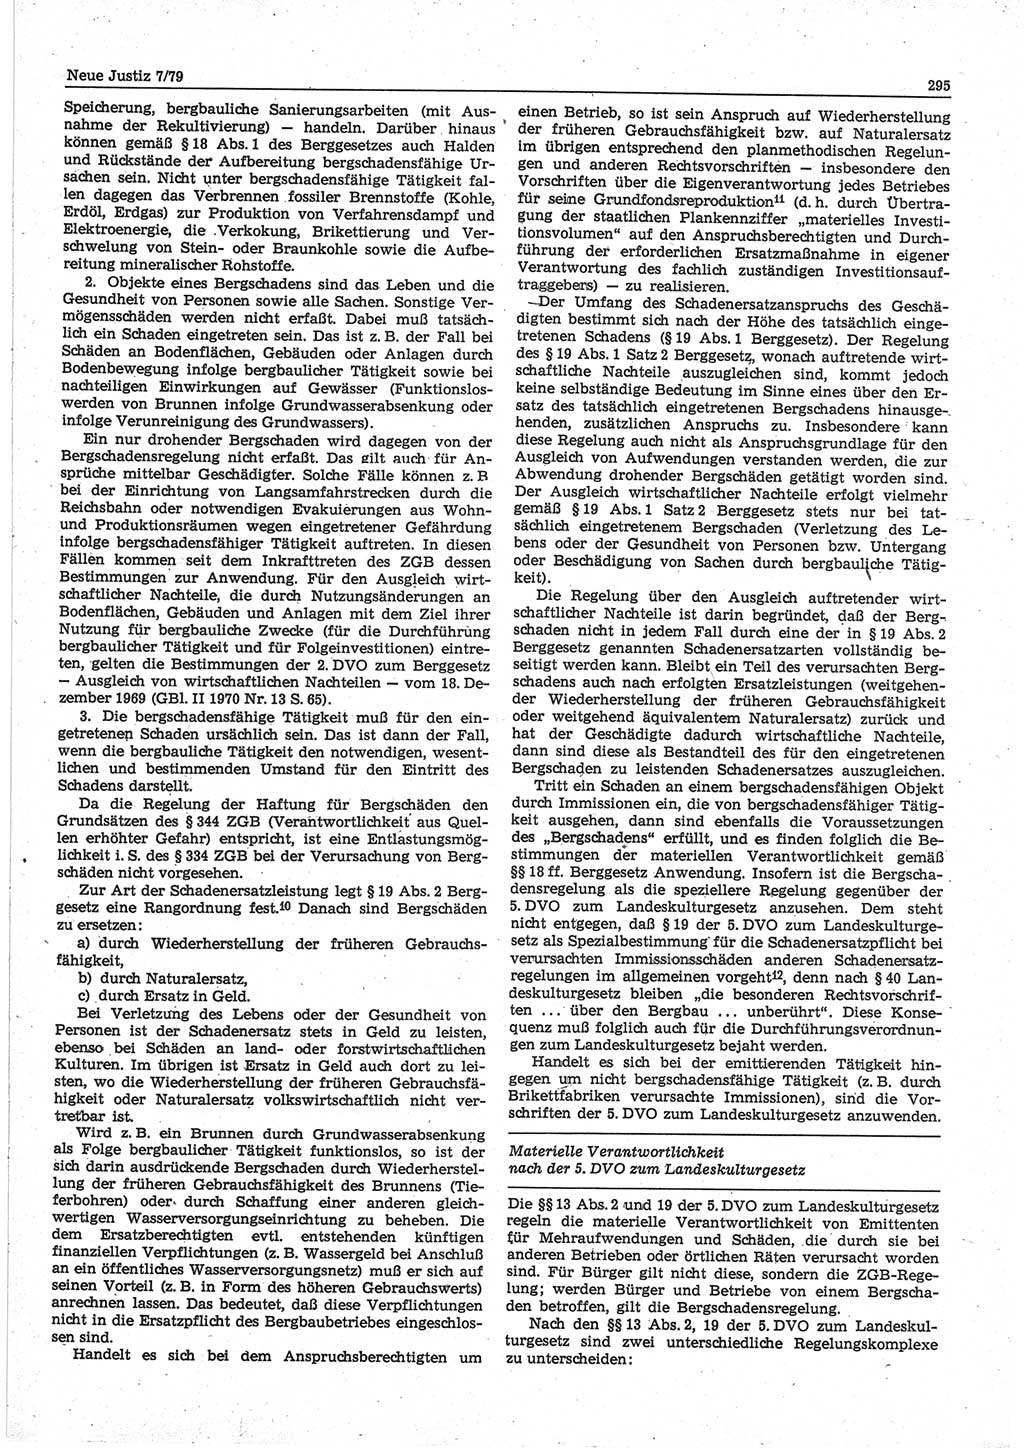 Neue Justiz (NJ), Zeitschrift für sozialistisches Recht und Gesetzlichkeit [Deutsche Demokratische Republik (DDR)], 33. Jahrgang 1979, Seite 295 (NJ DDR 1979, S. 295)